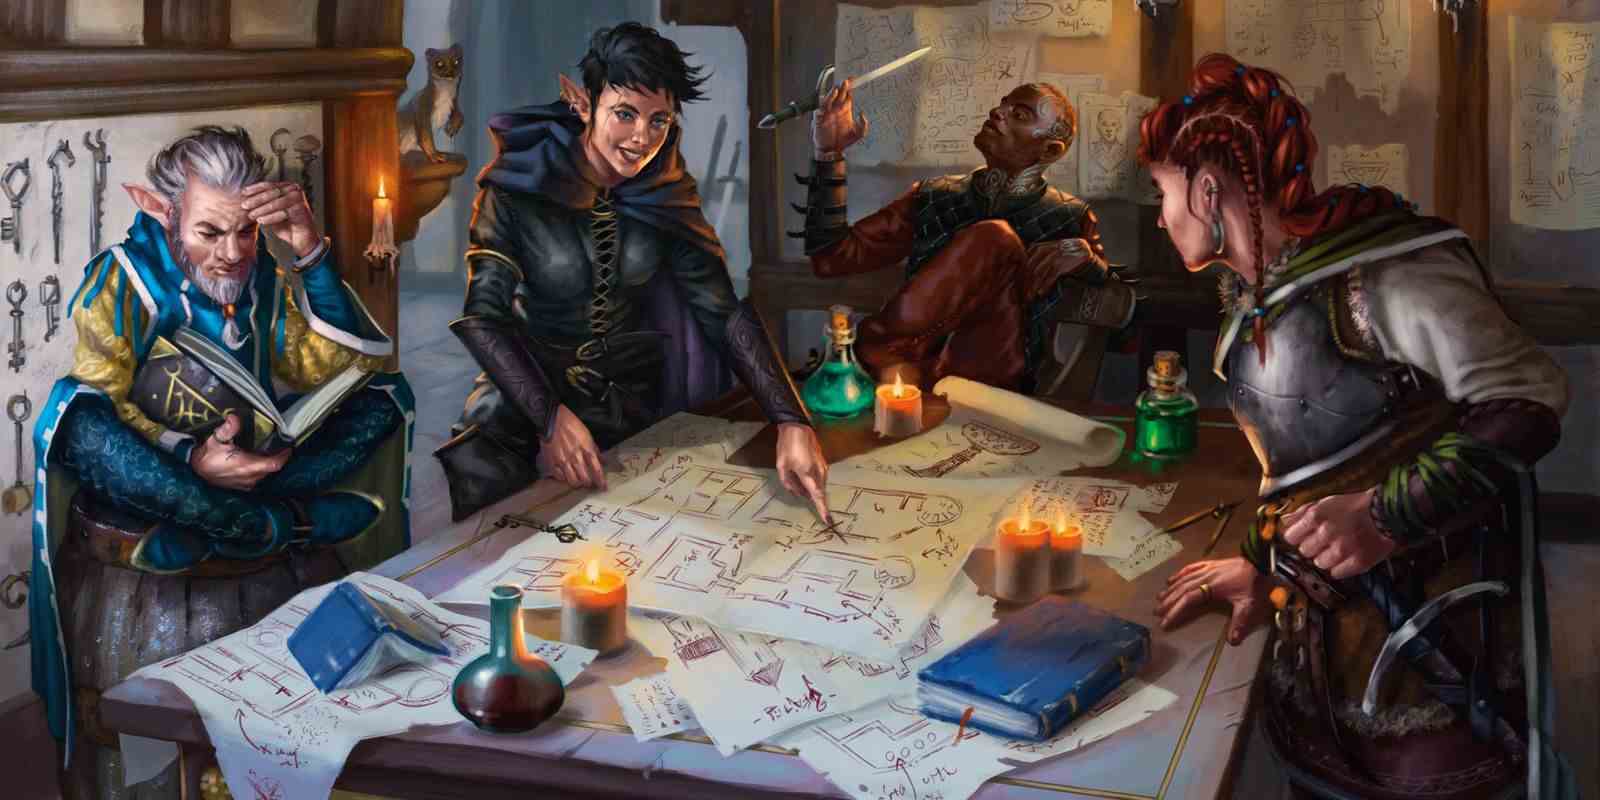 Zindanlar ve Ejderhalar Kitap sanatı Altın Mahzen'den Anahtarlar, dört maceracıdan oluşan bir grup bir masanın etrafında durup birkaç haritaya bakıyor